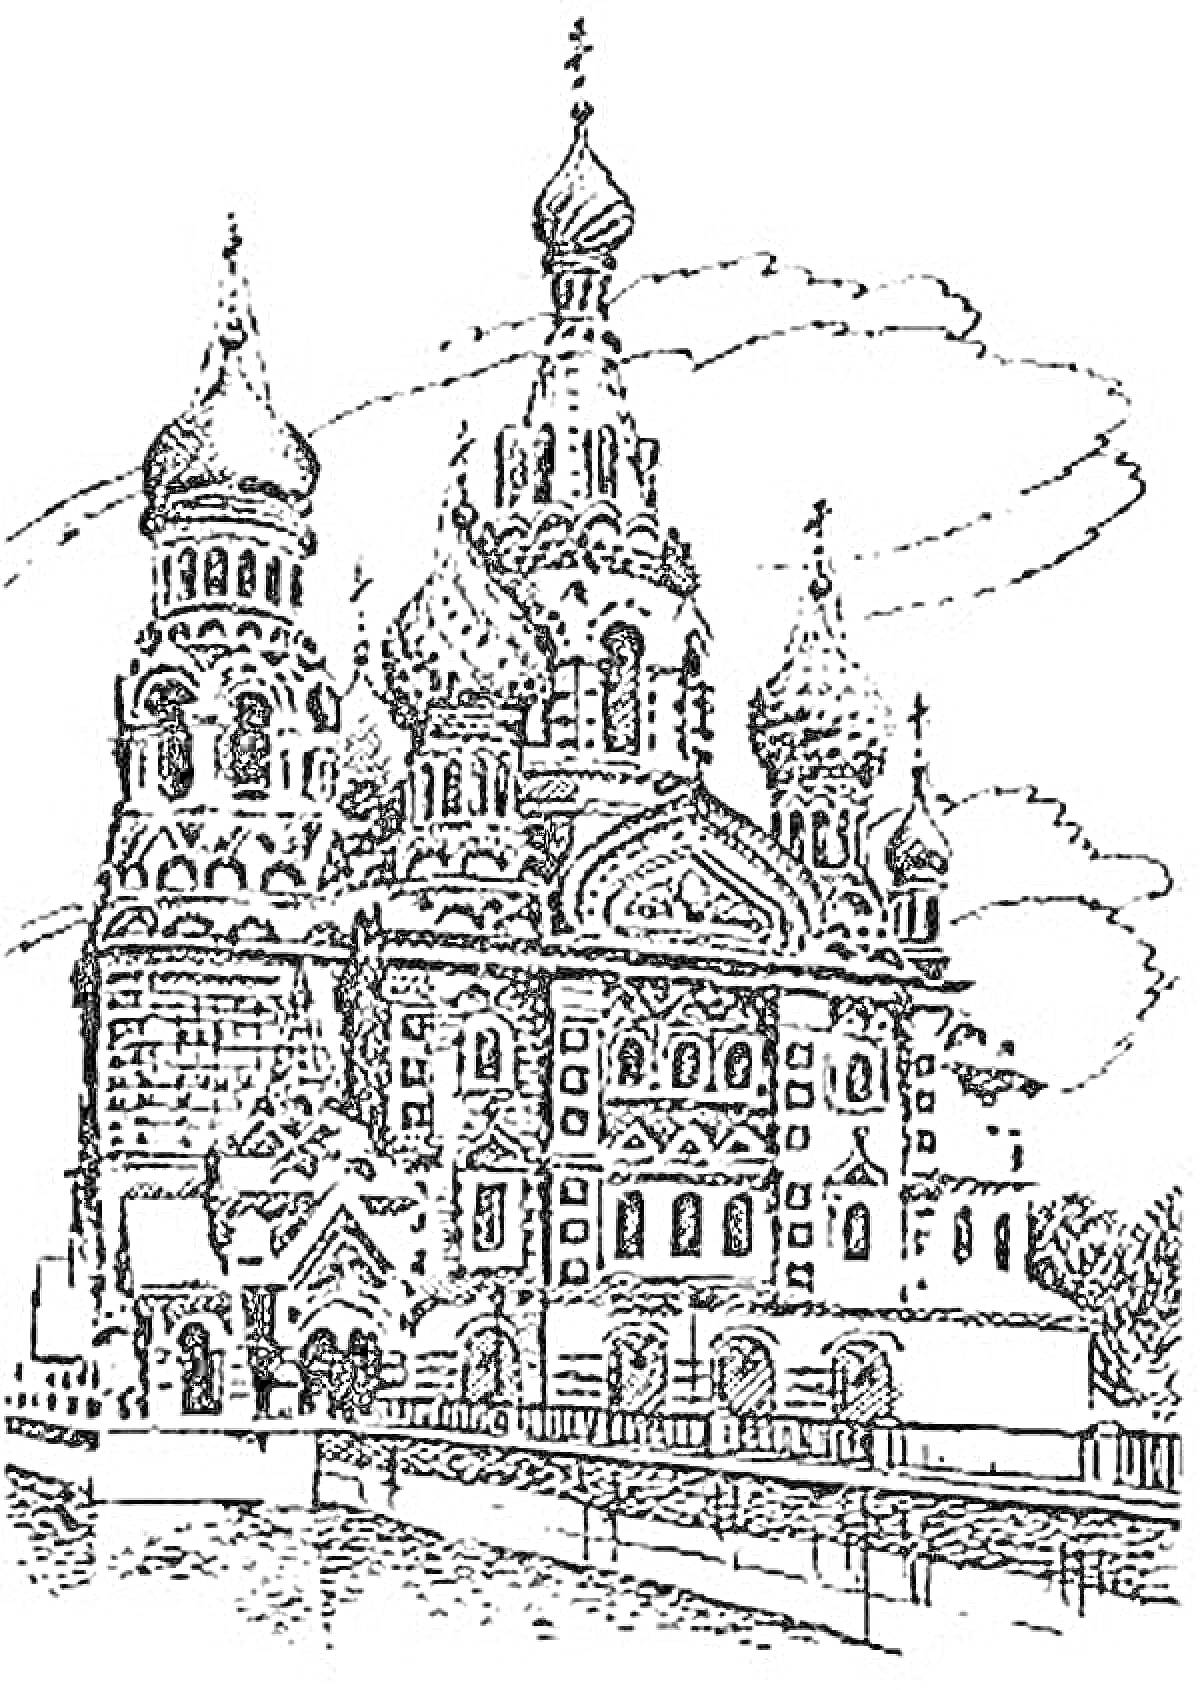 Раскраска Восковая раскраска храма Спаса на Крови с детальной архитектурой, куполами и элементами фасада